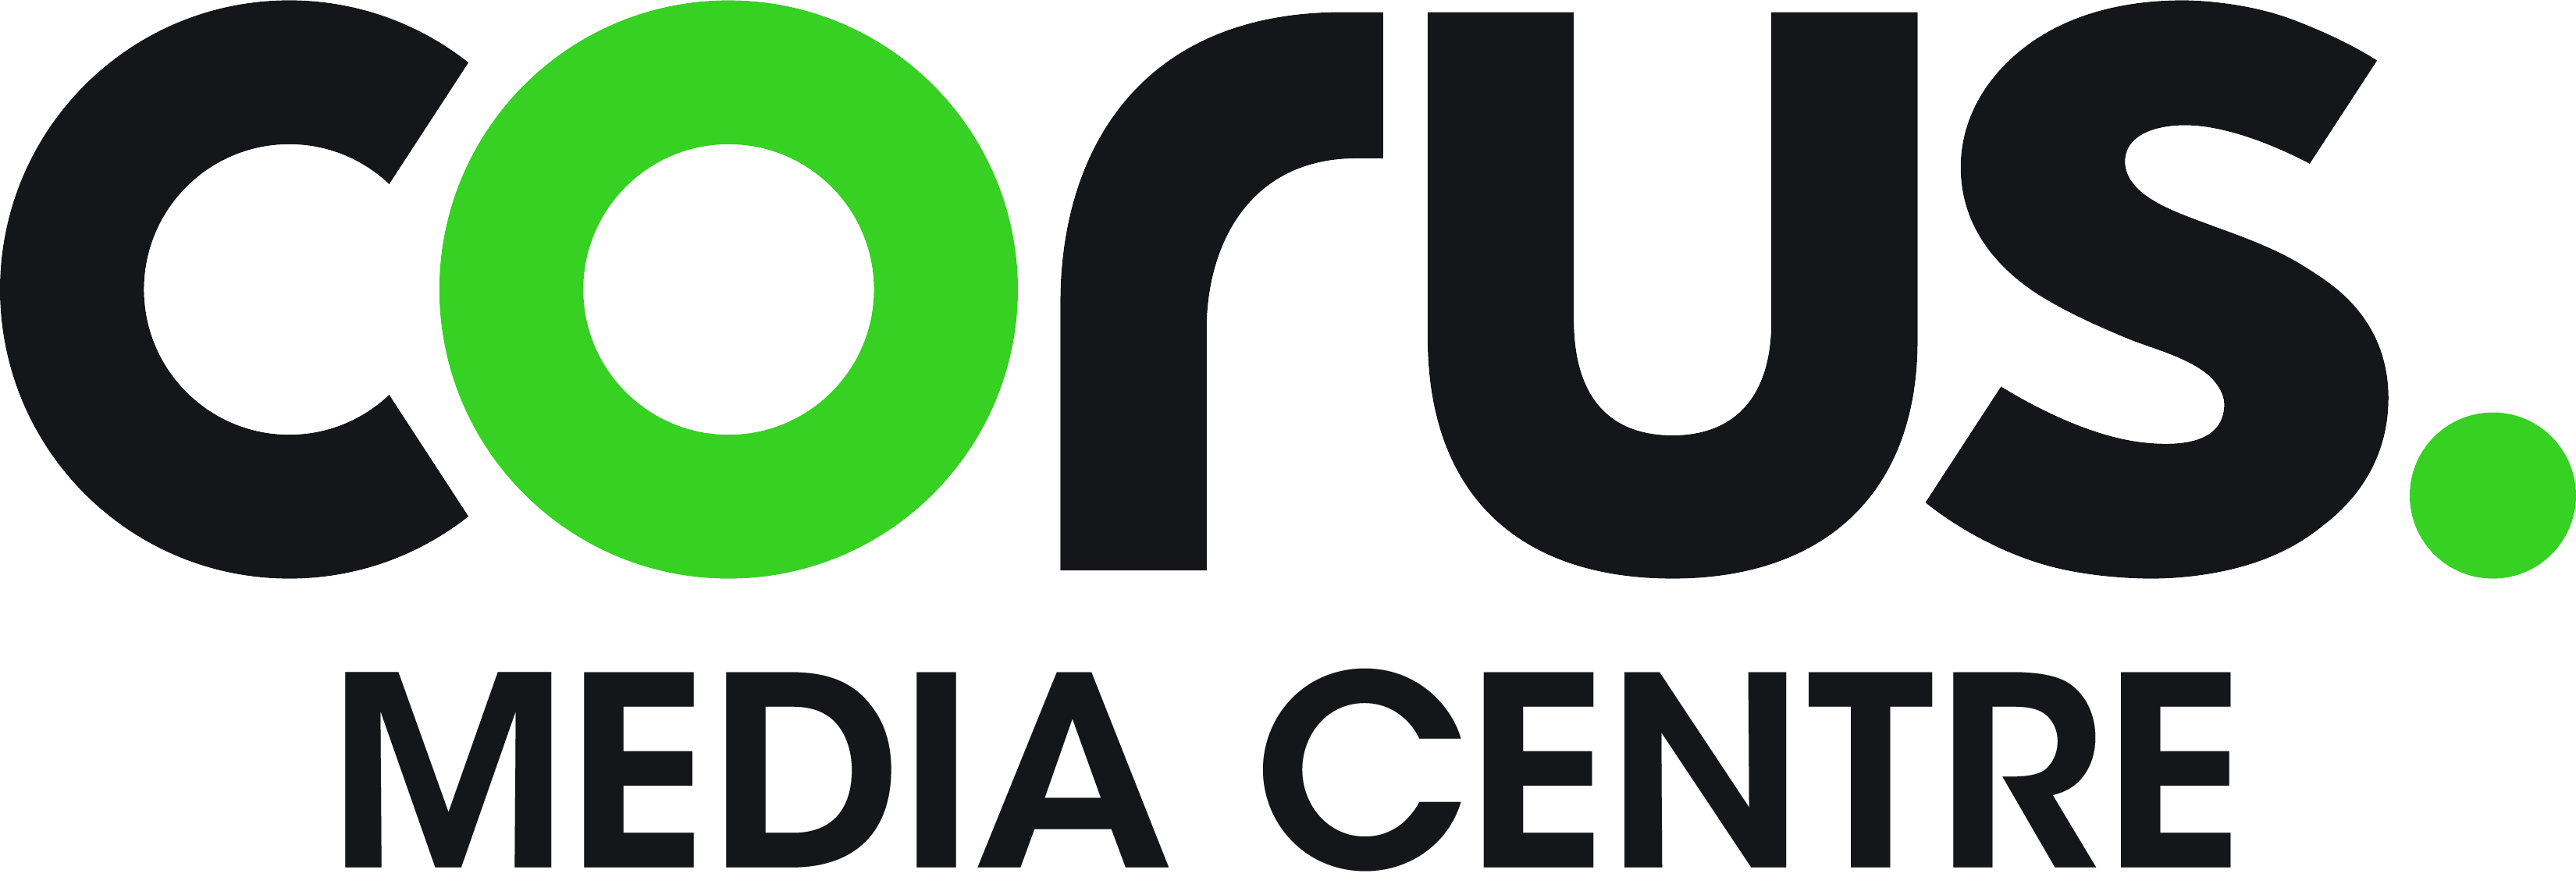 Corus Media Centre Logo